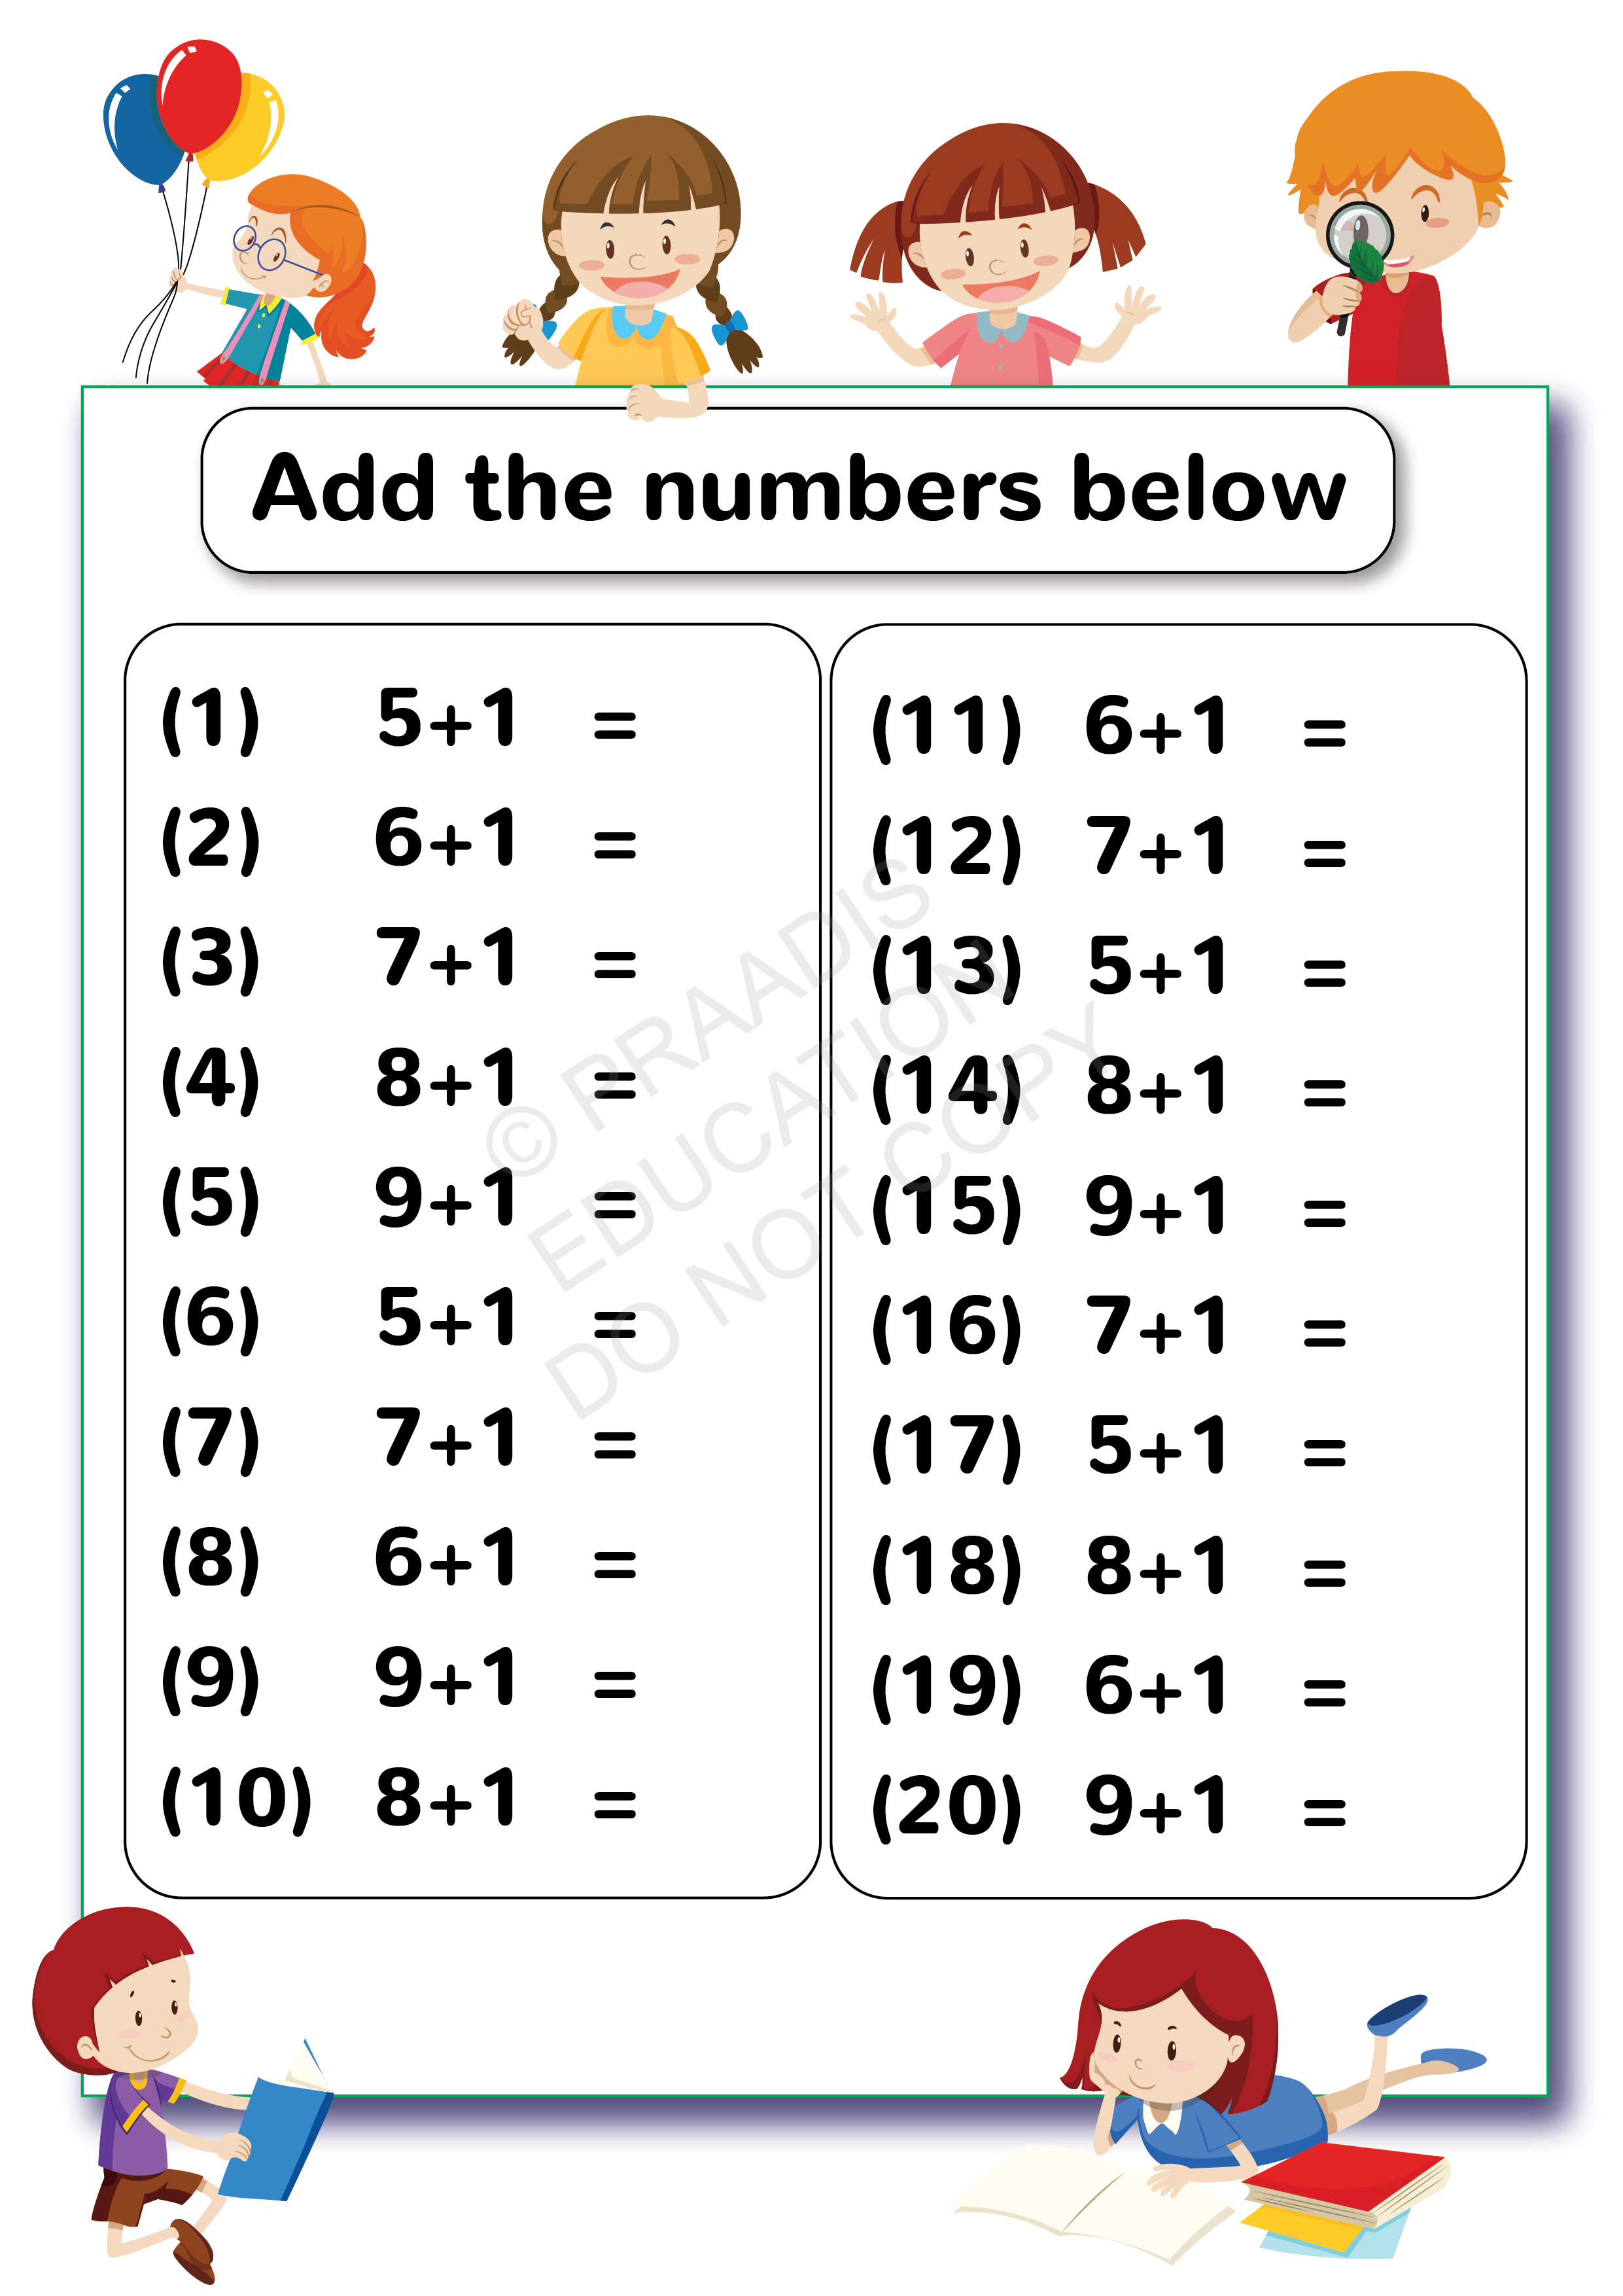 patterns-ukg-math-worksheets-worksheets-for-lkg-to-grade-3-maths